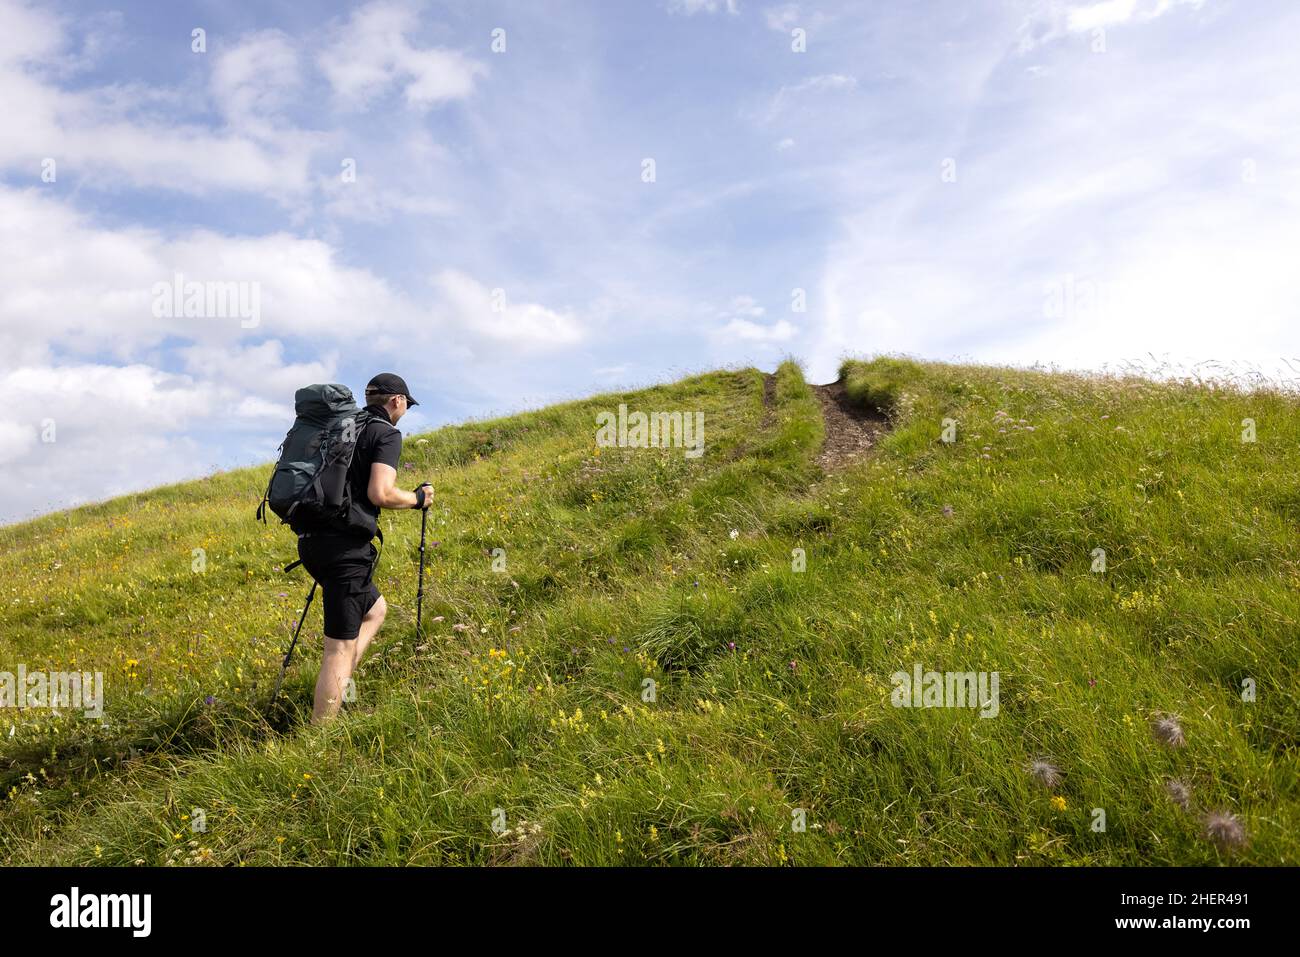 Randonneur avec sac à dos et bâtons de randonnée grimpant sur une colline verte Banque D'Images